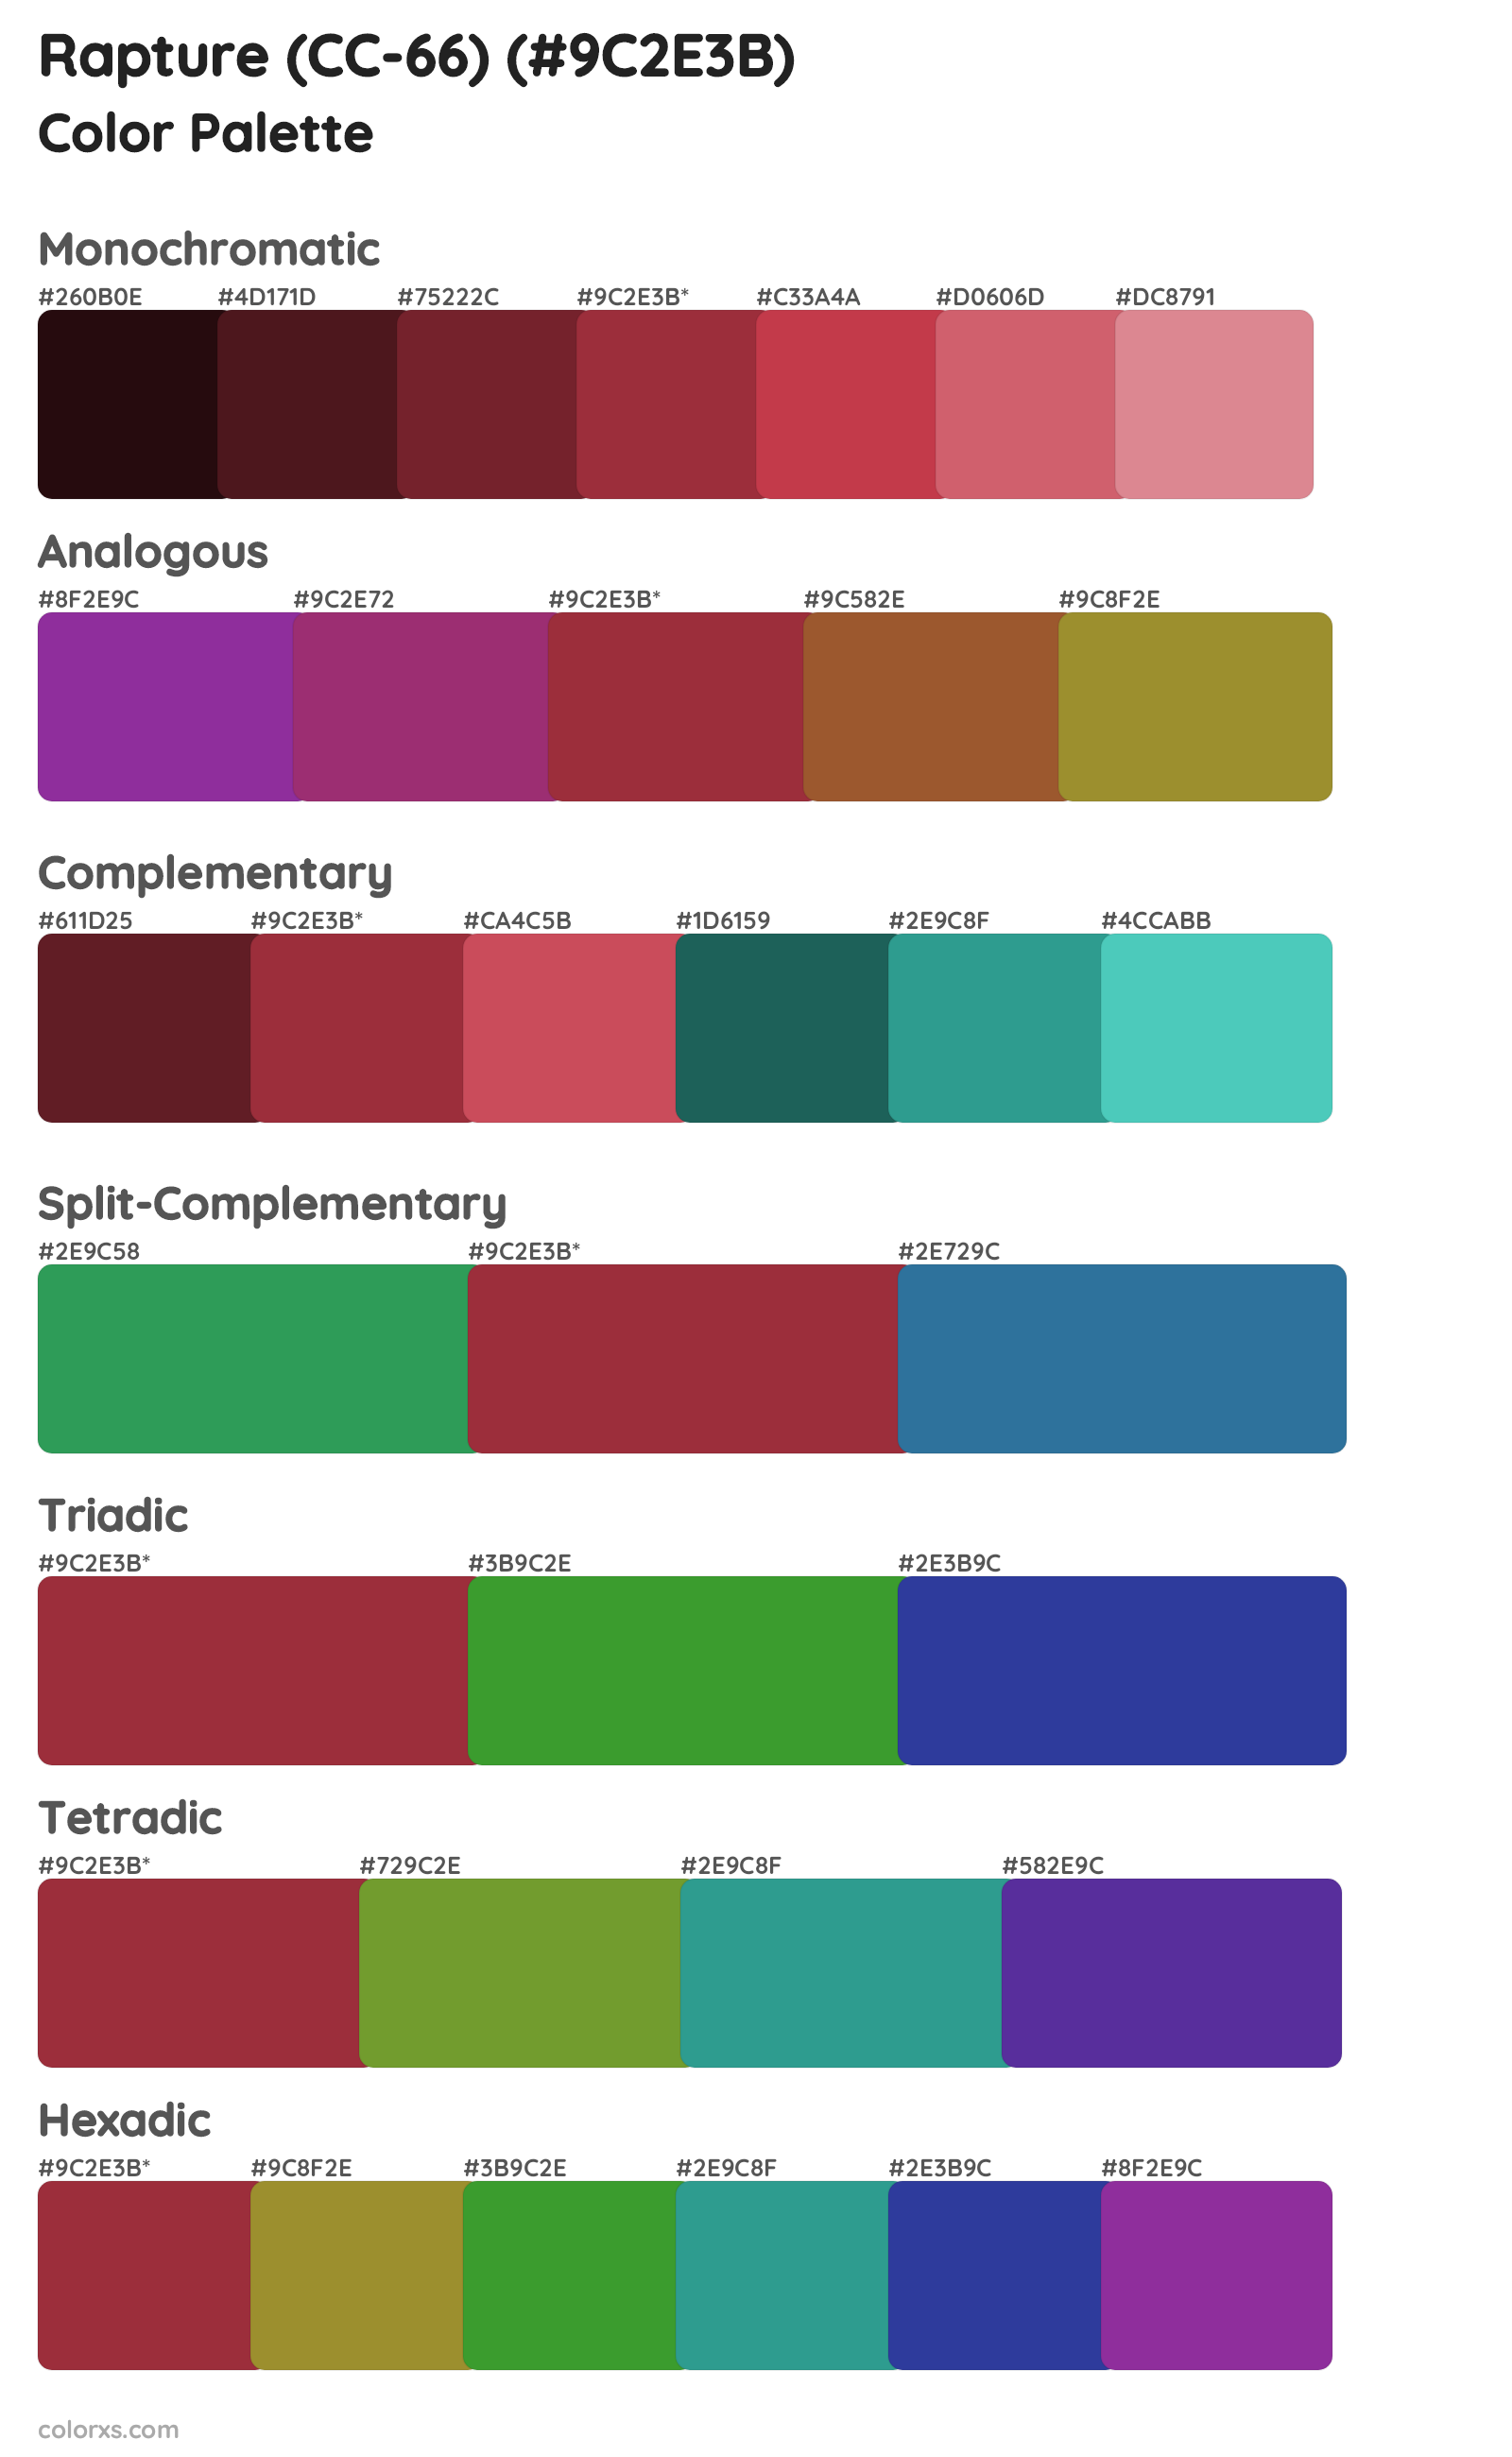 Rapture (CC-66) Color Scheme Palettes